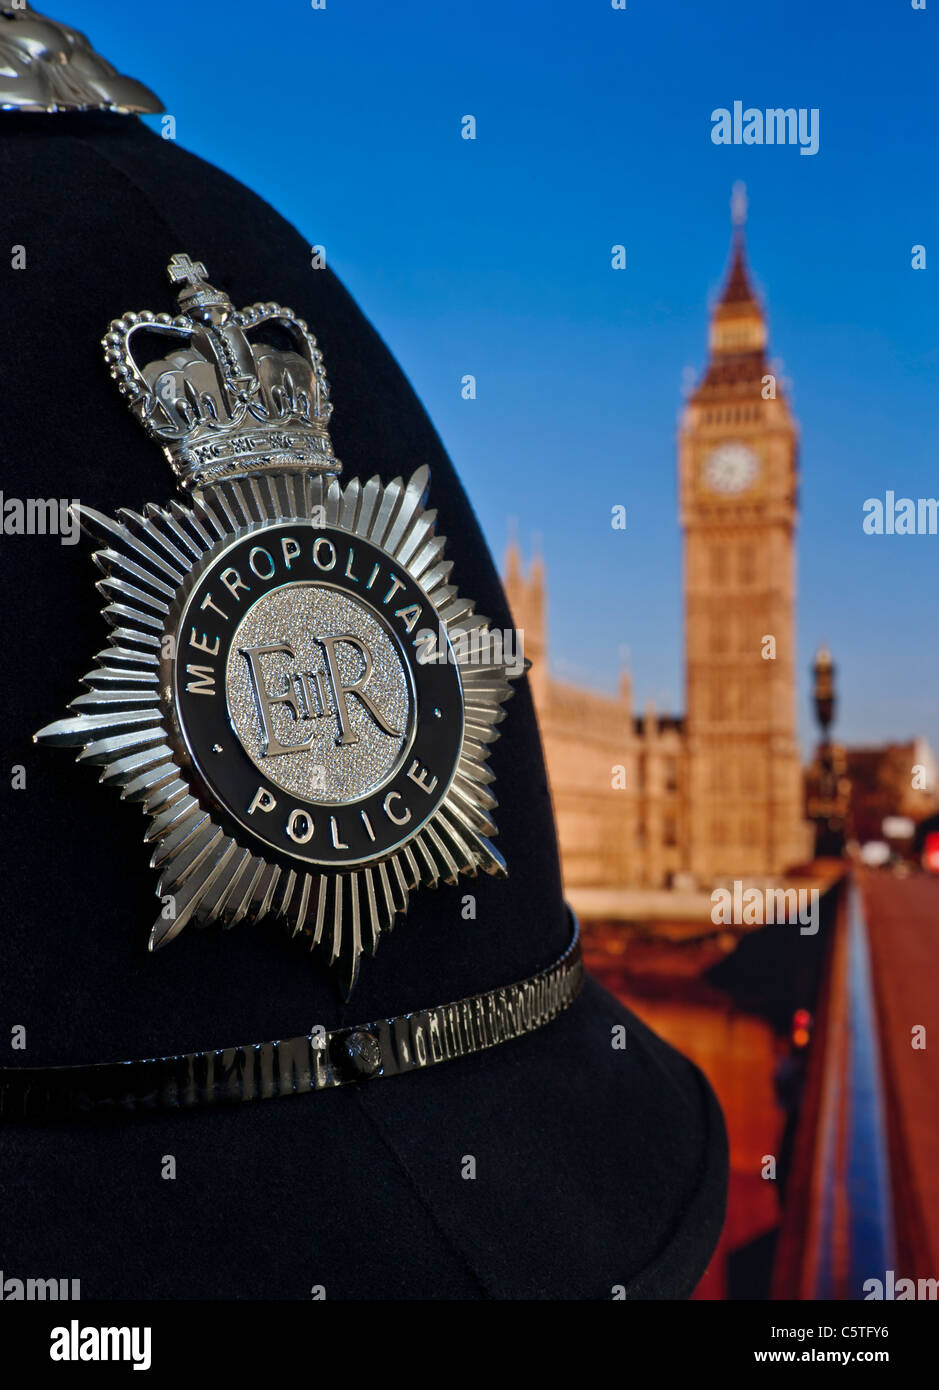 Casco e distintivo della polizia metropolitana con il Parlamento e il Tamigi alle spalle. Concetto polizia legge politica Westminster Londra Regno Unito Foto Stock